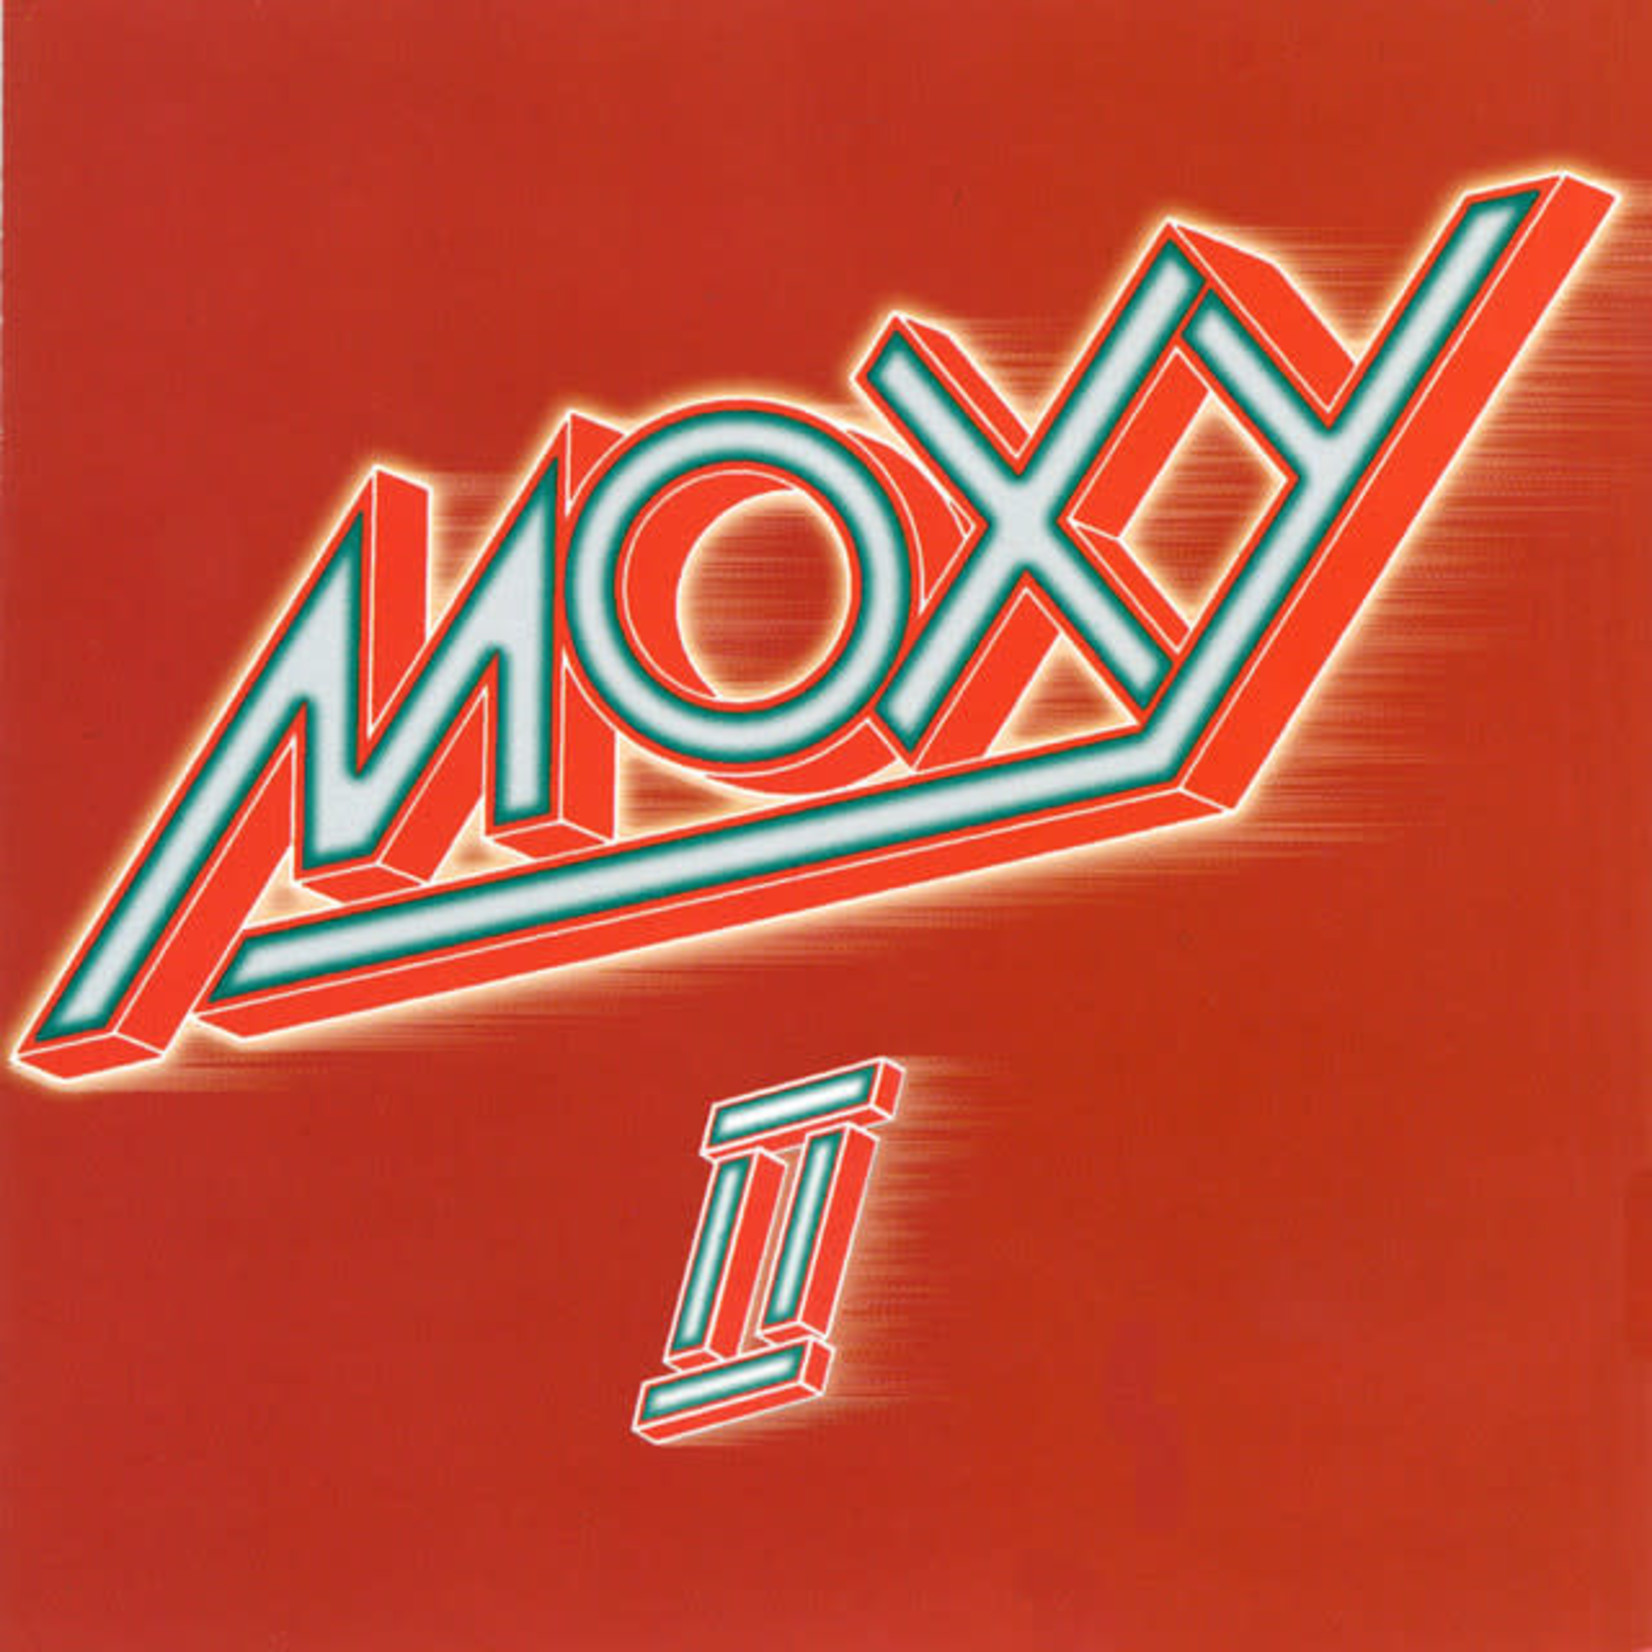 [Vintage] Moxy - II